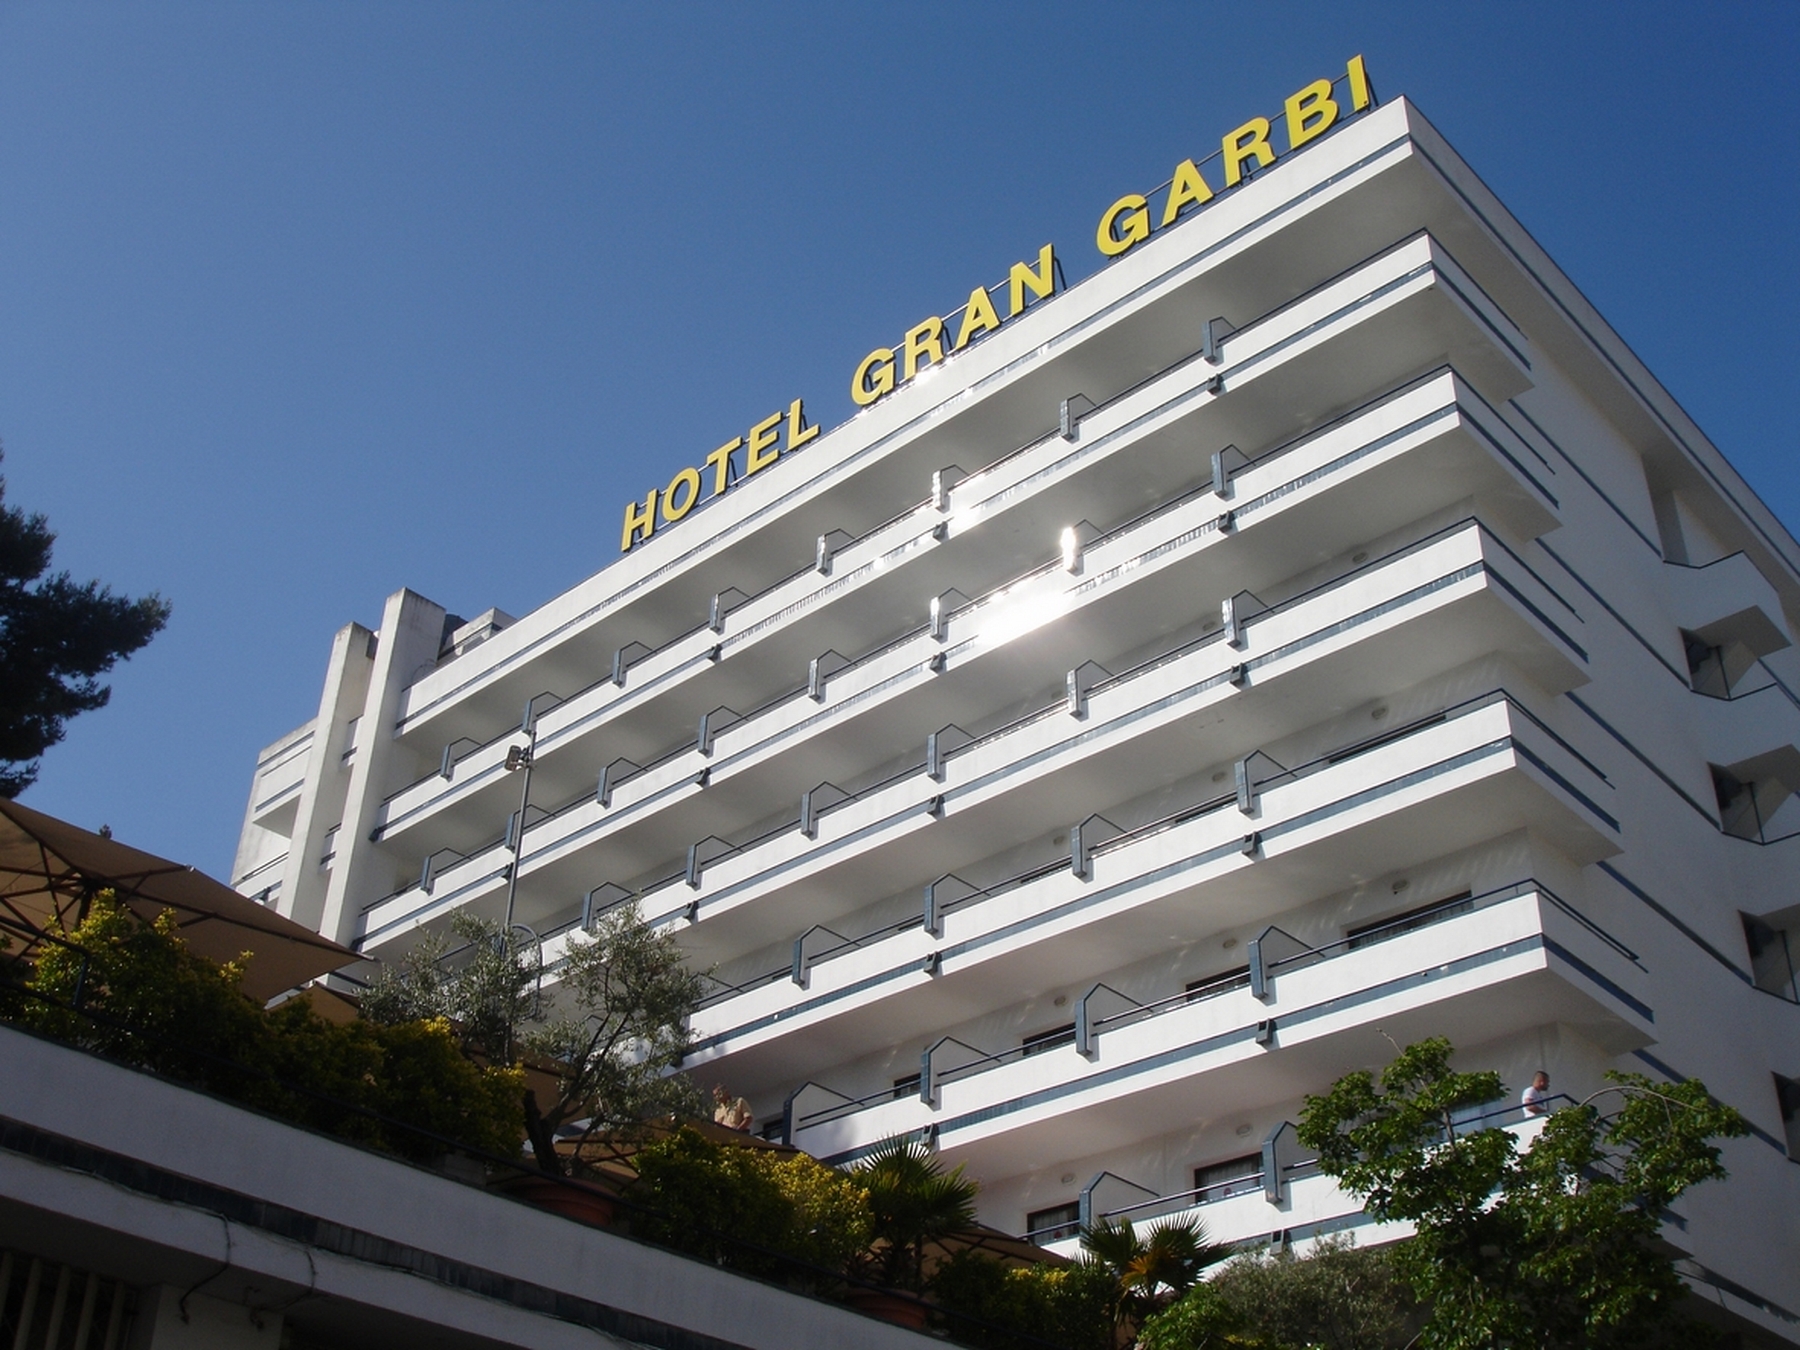 Hotel Gran Garbi